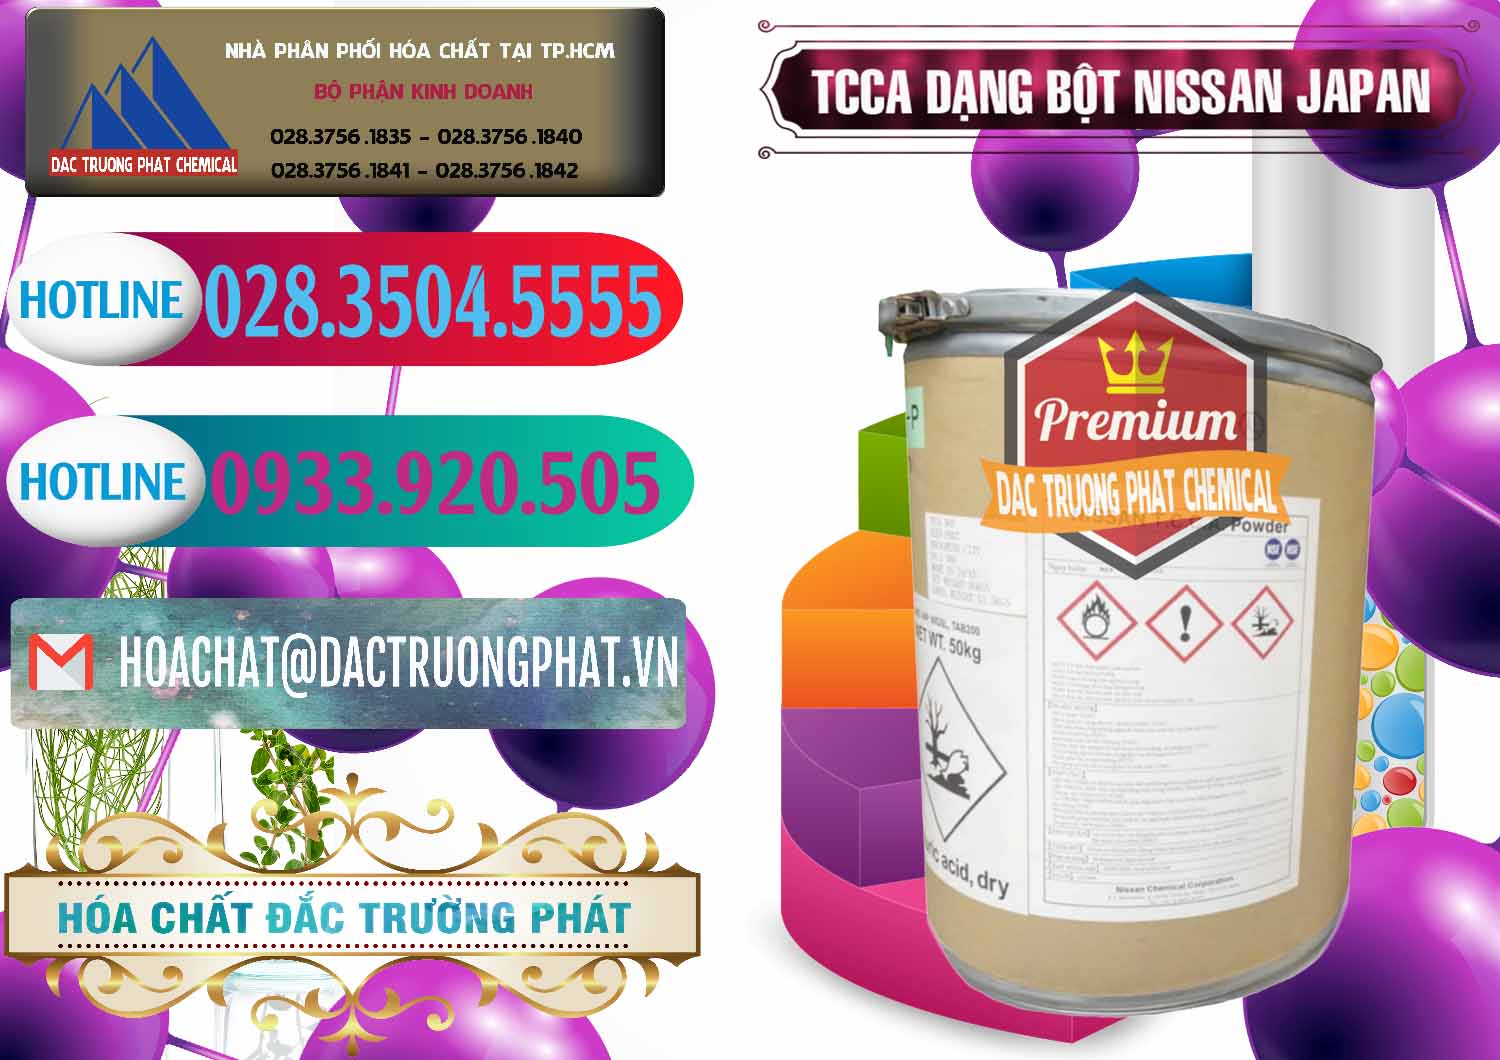 Công ty nhập khẩu _ bán TCCA - Acid Trichloroisocyanuric 90% Dạng Bột Nissan Nhật Bản Japan - 0375 - Công ty nhập khẩu ( phân phối ) hóa chất tại TP.HCM - truongphat.vn